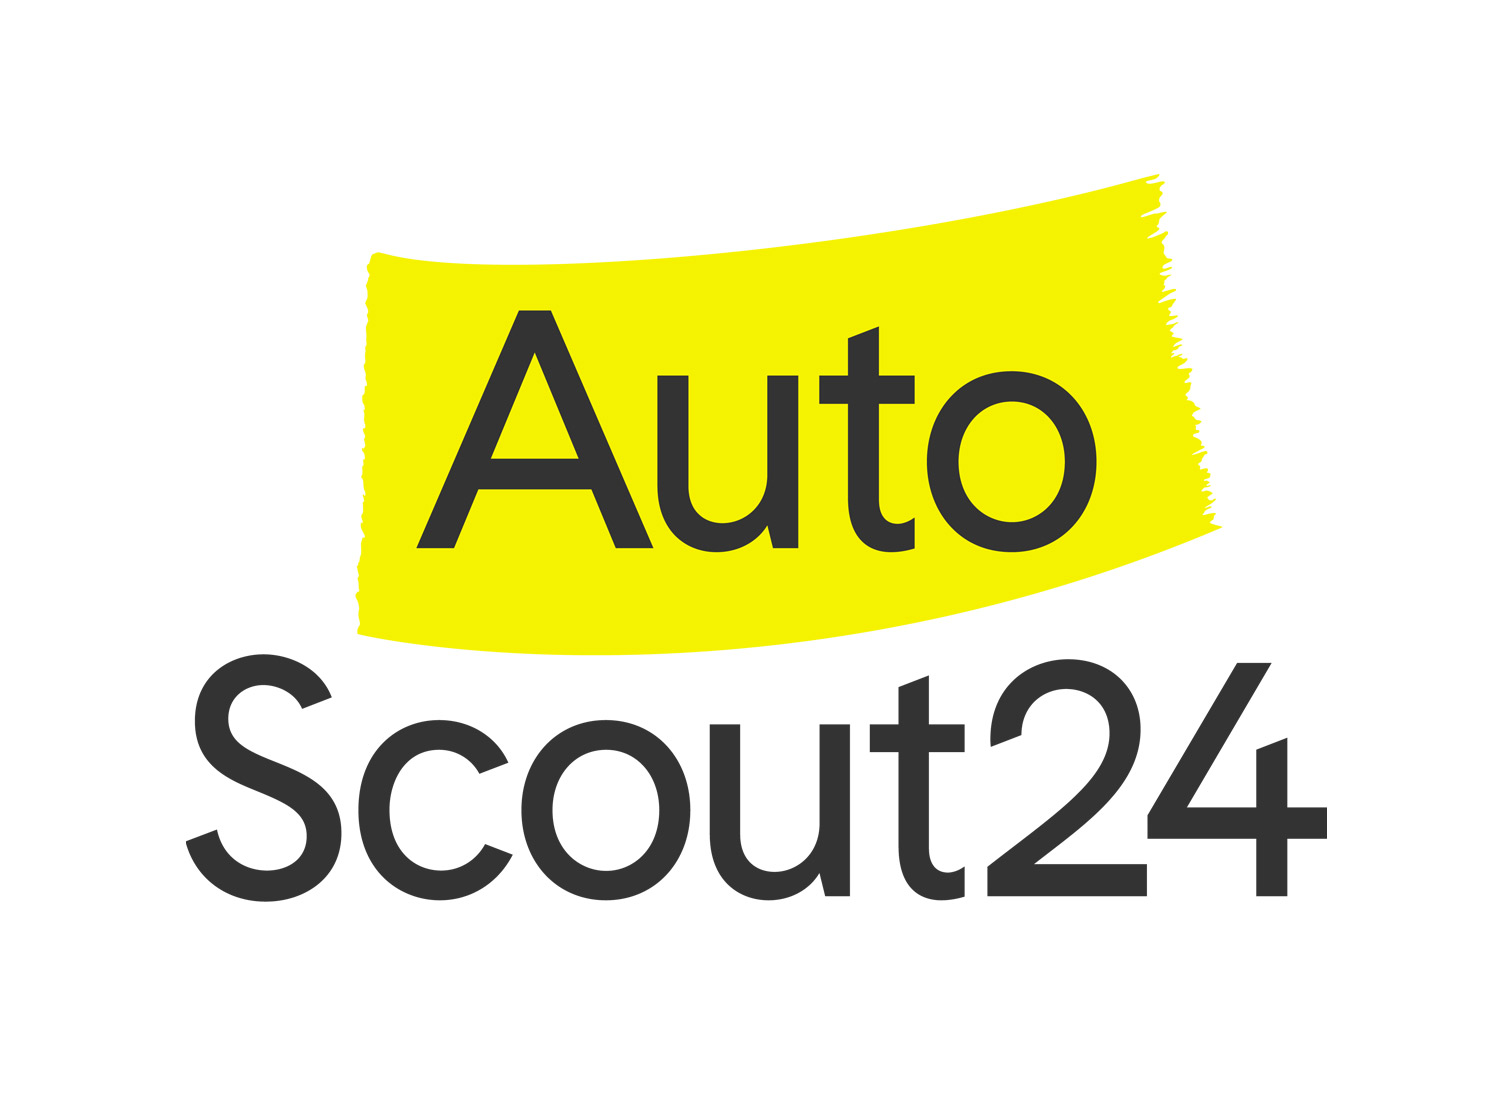 AutoScout24 Markenlogo, Quelle: Scout24